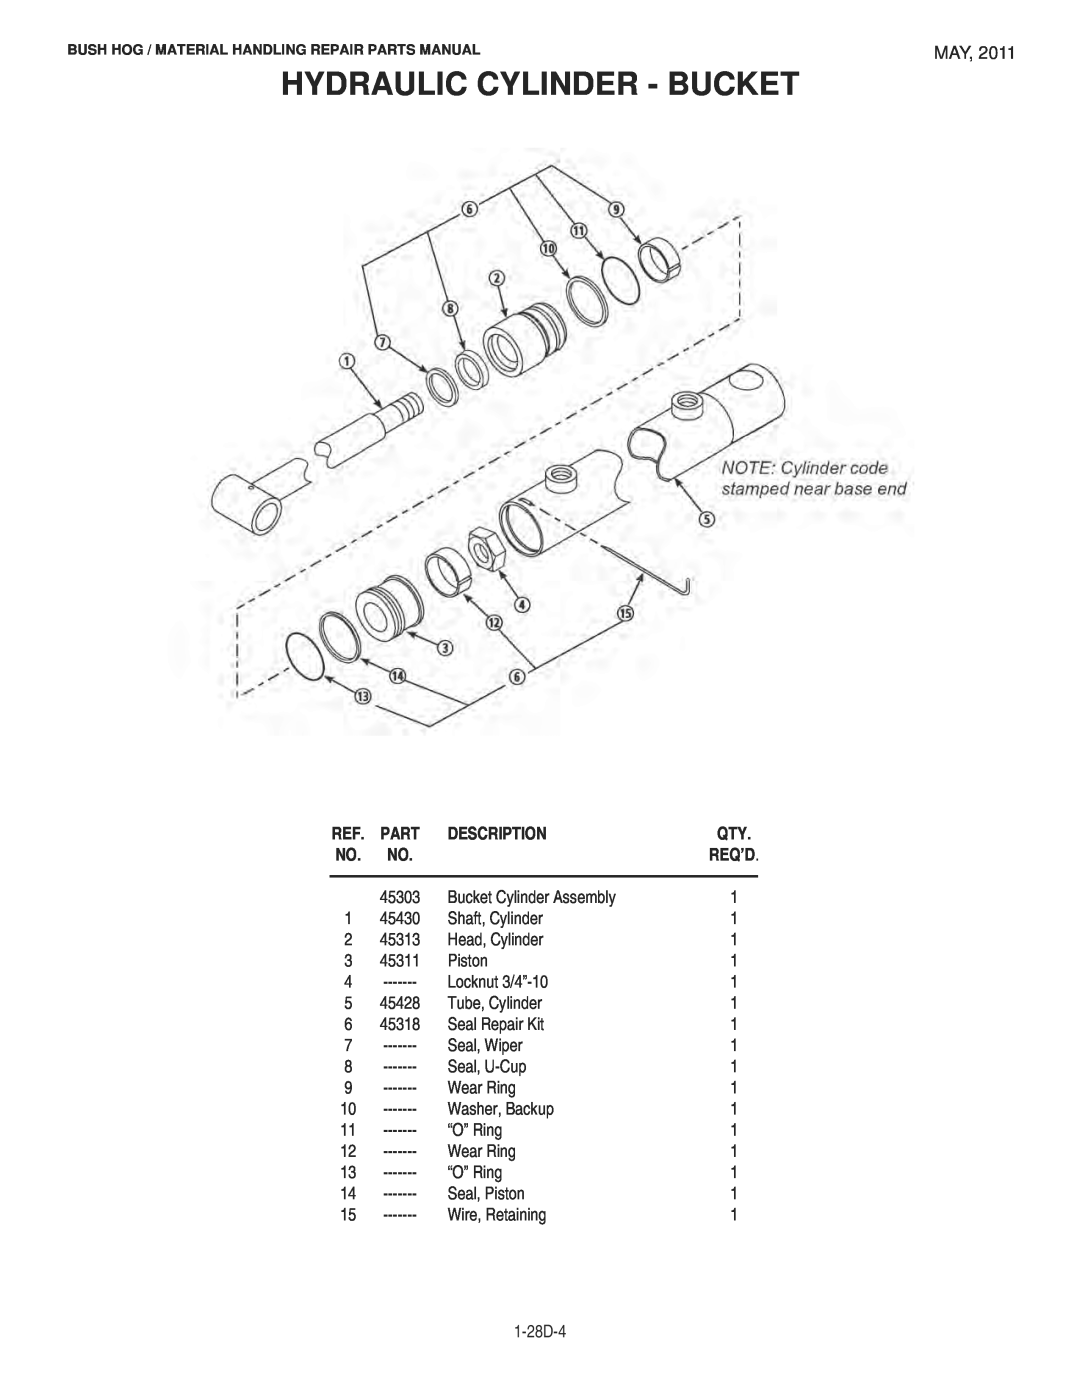 Bush Hog 1747 manual Hydraulic Cylinder - Bucket, Description 